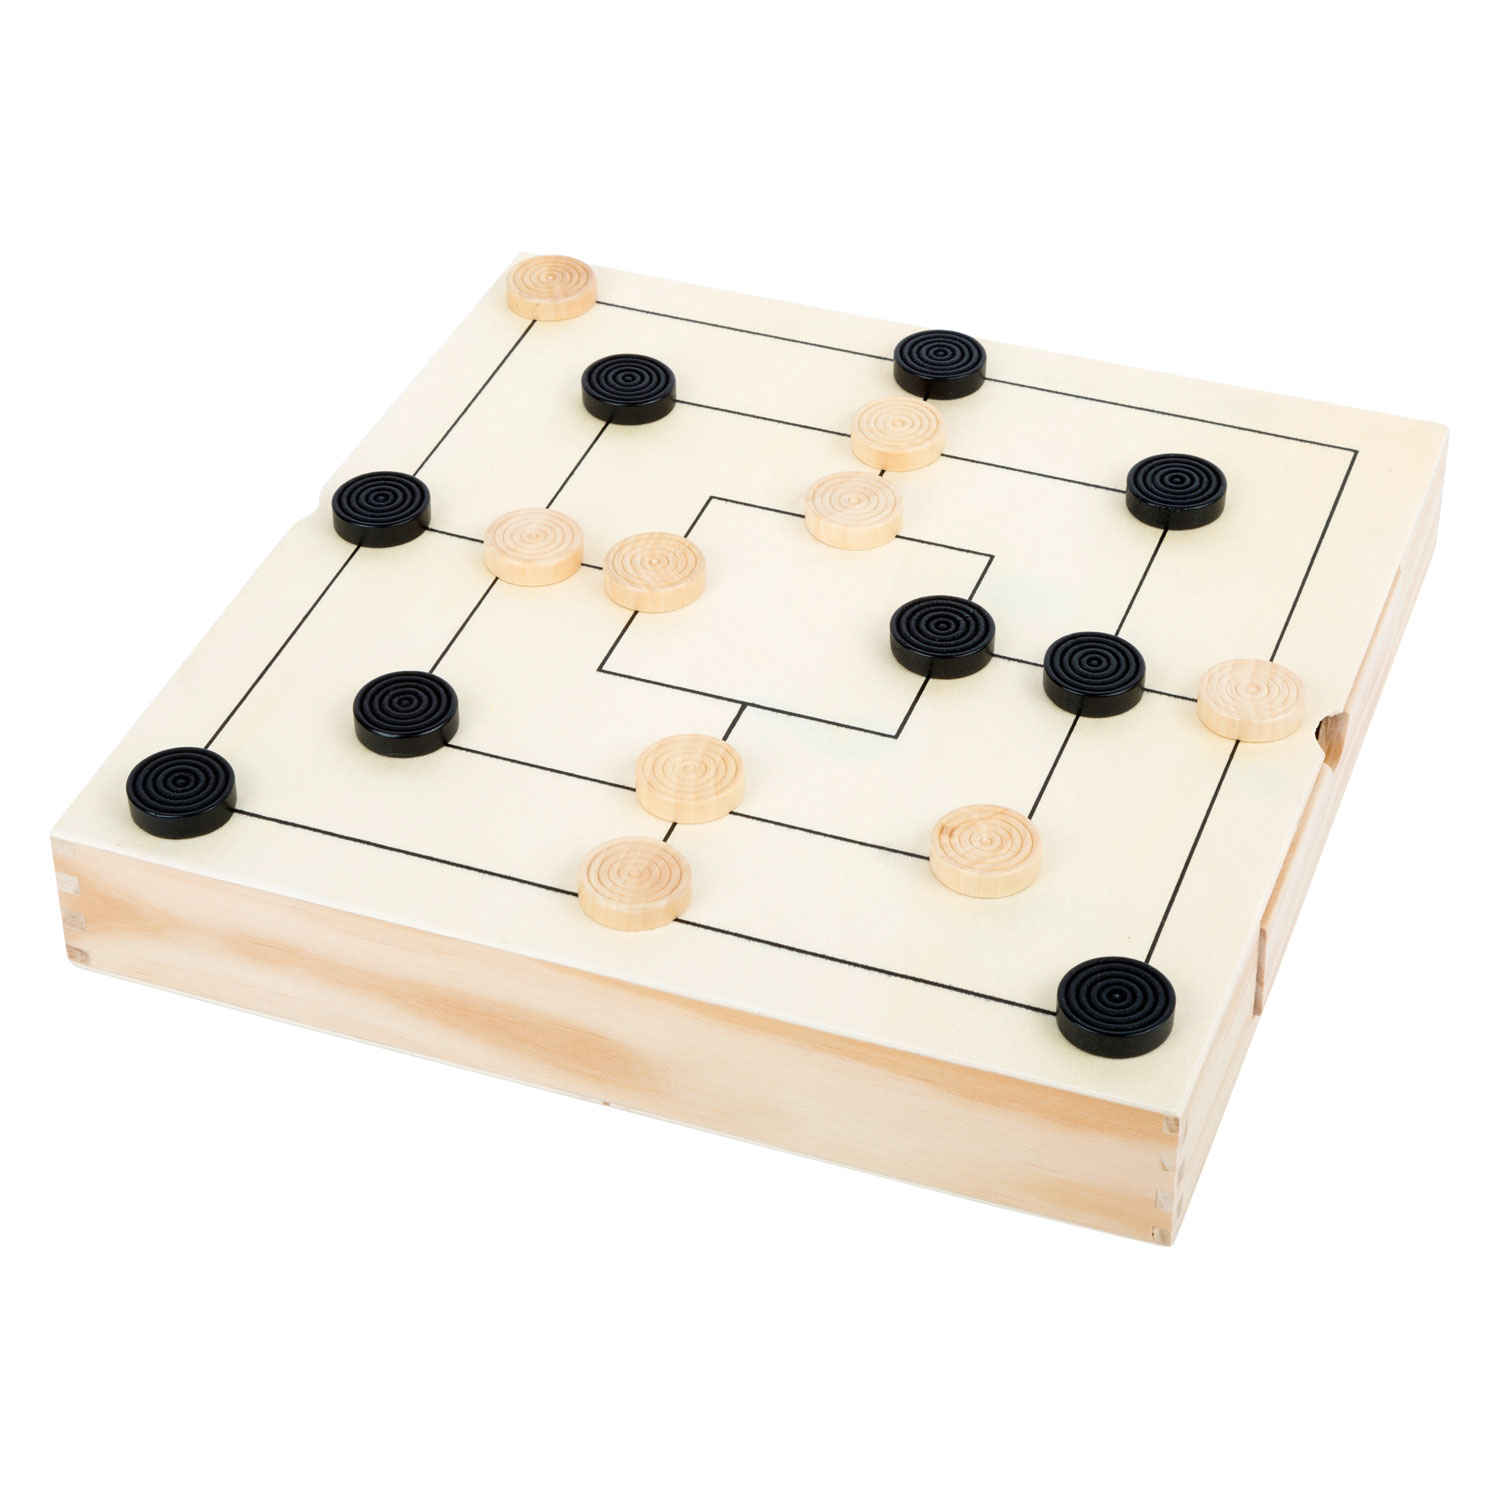 Small Foot - Spielbox 3in1 Schach-Dame-Mühlenspiel